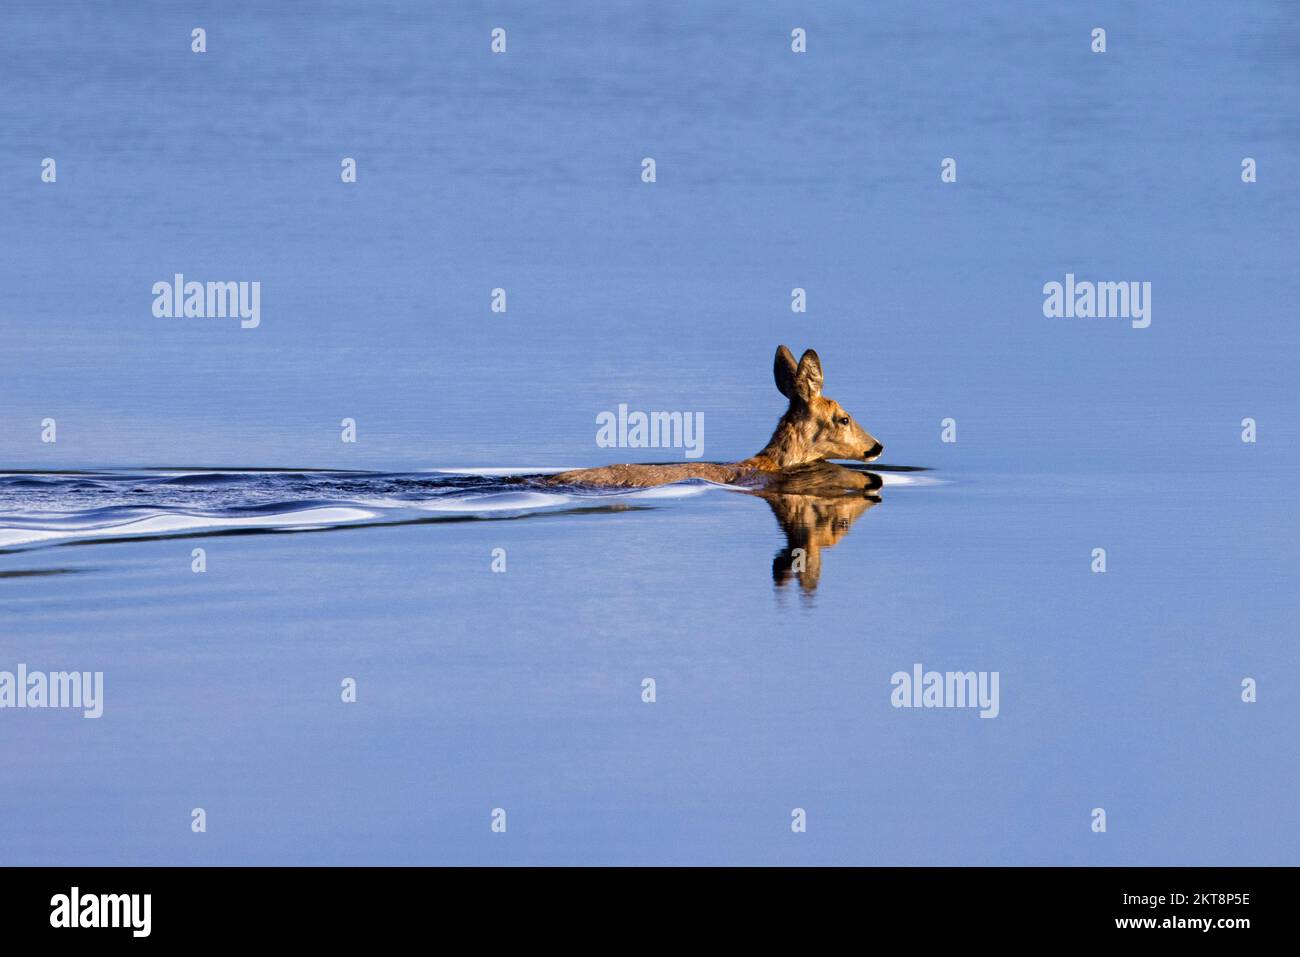 Roe deer (Capreolus capreolus) female / doe crossing lake by swimming in water in spring Stock Photo